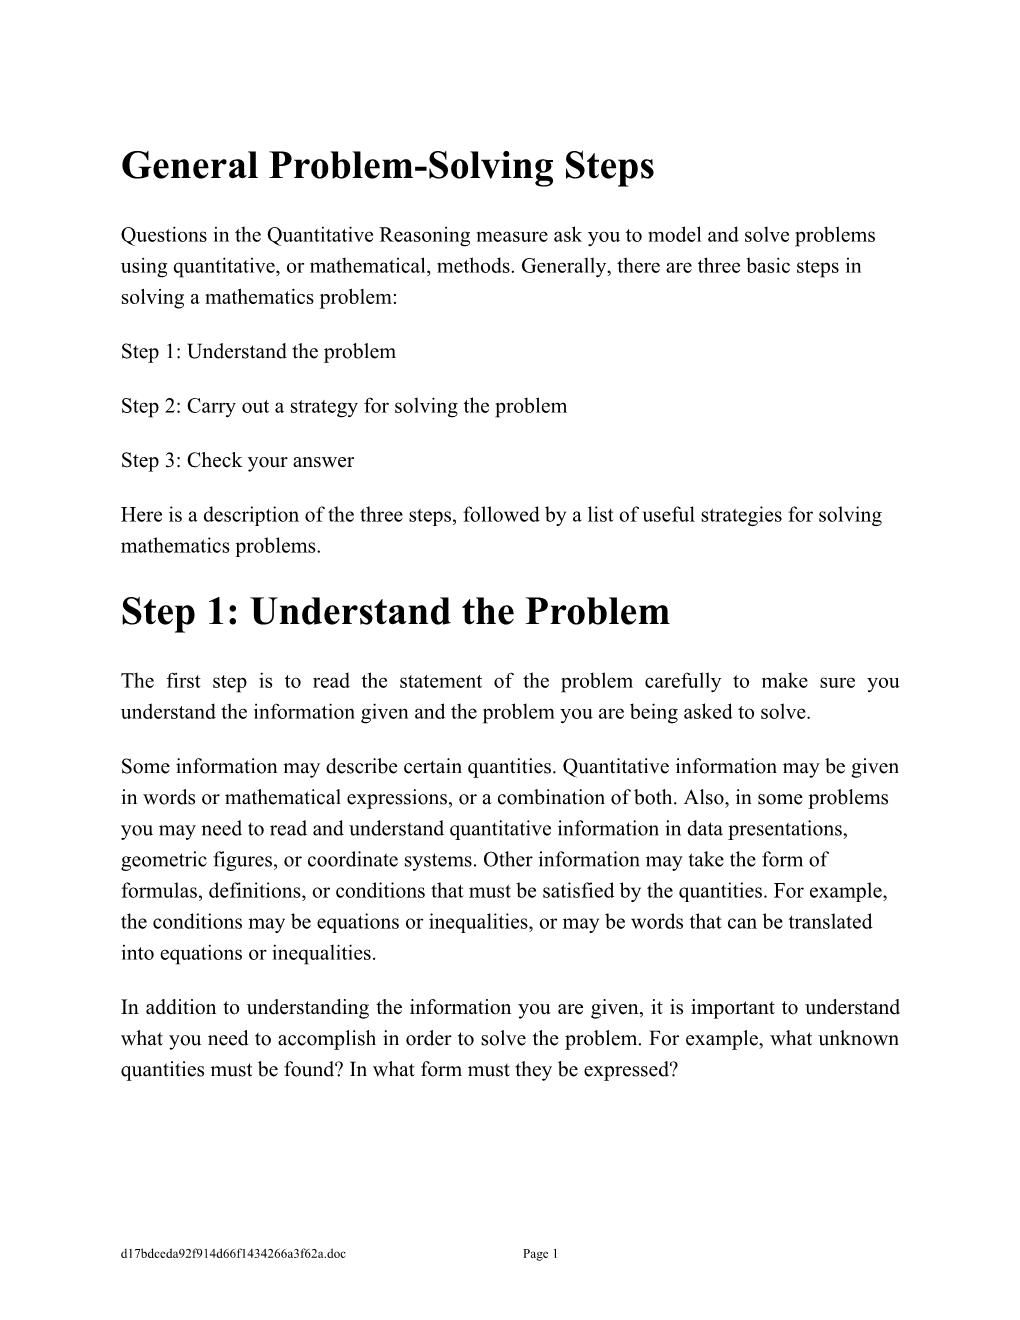 General Problem-Solving Steps